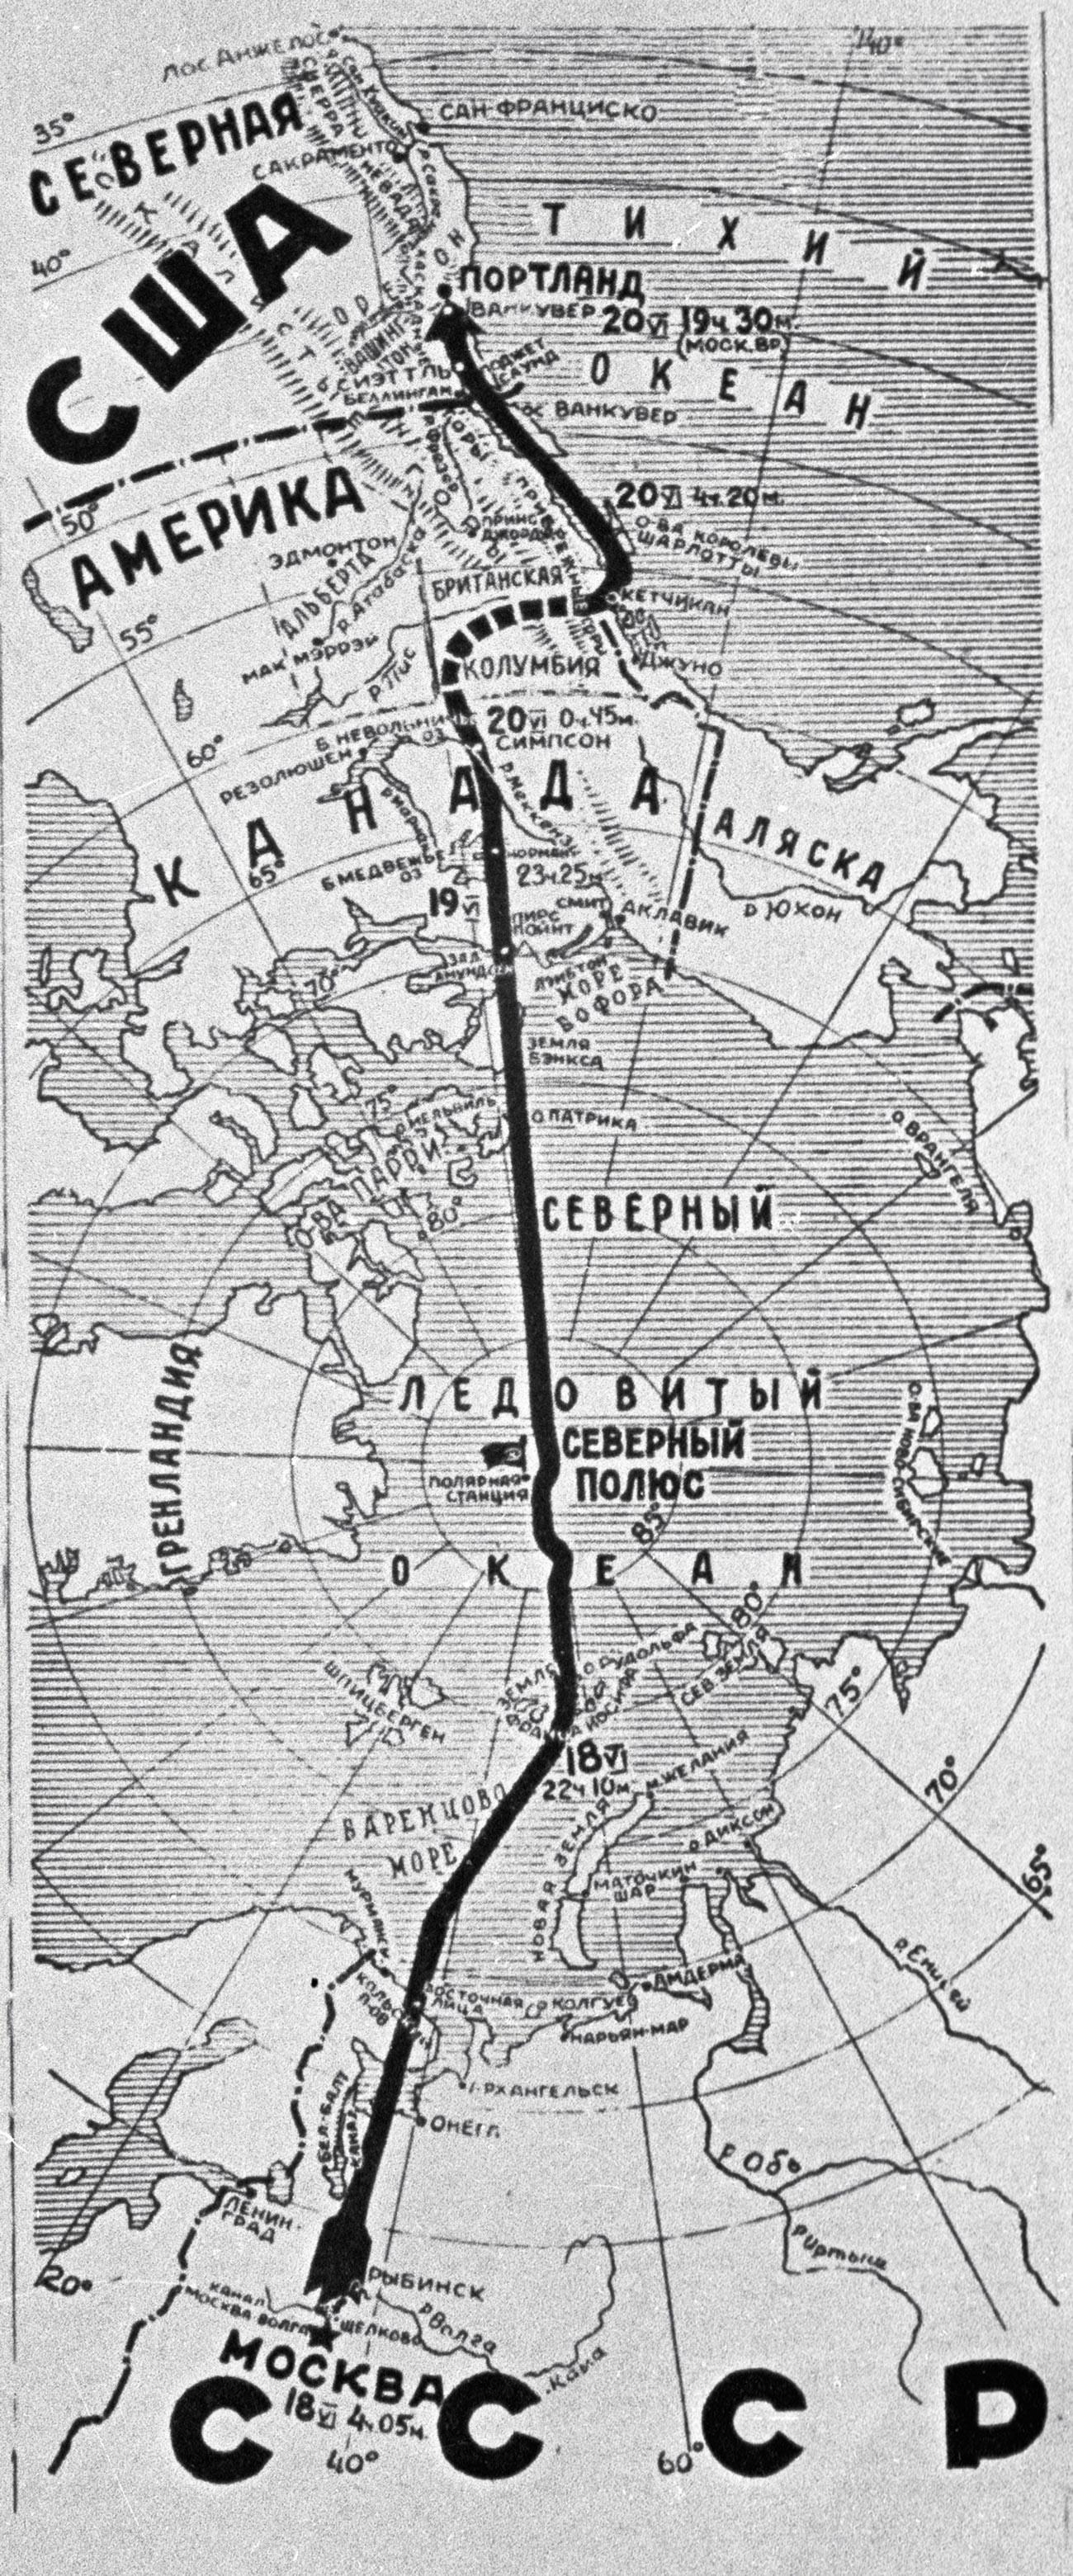 Chkalov ha volato con un aereo da Mosca a Vancouver, Washington, negli Stati Uniti, passando per il Polo Nord